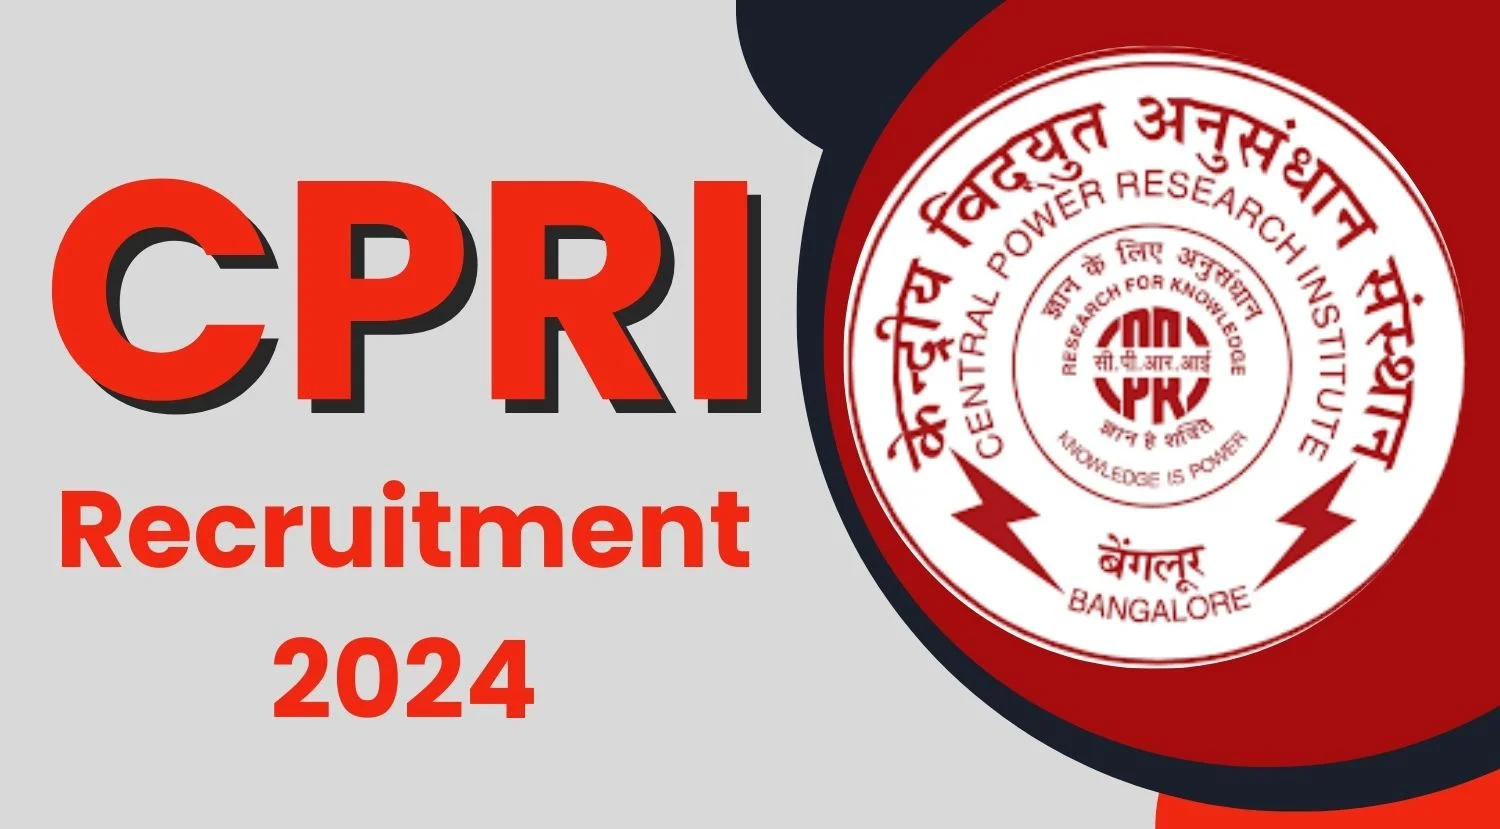 CPRI Research Associate Recruitment 2024